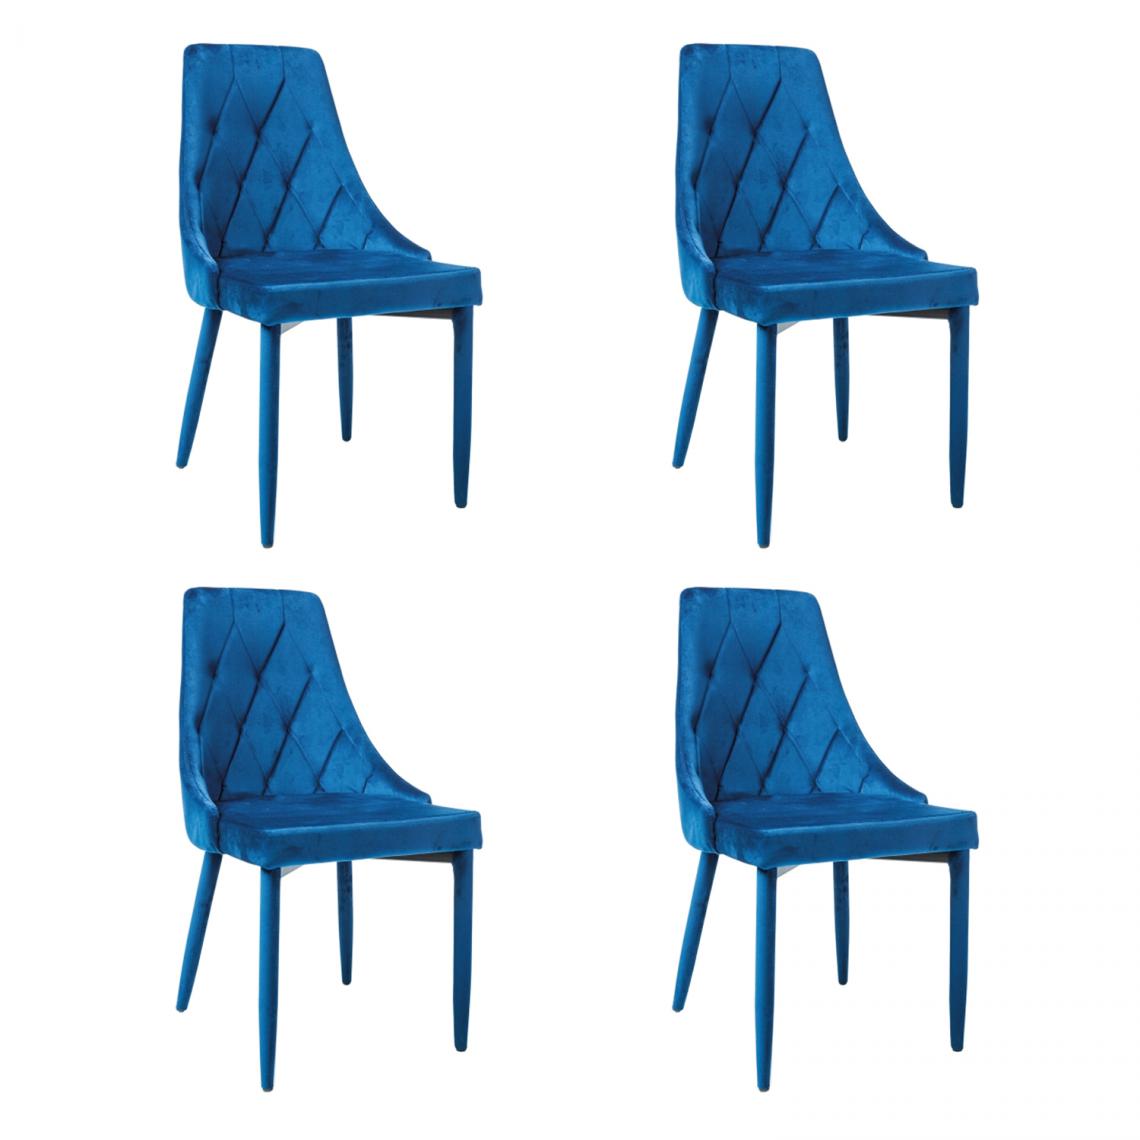 Hucoco - MELLEN - Lot de 4 chaises en tissu velouté - Style oriental - 88x46x46 cm - Structure métallique - Bleu - Chaises